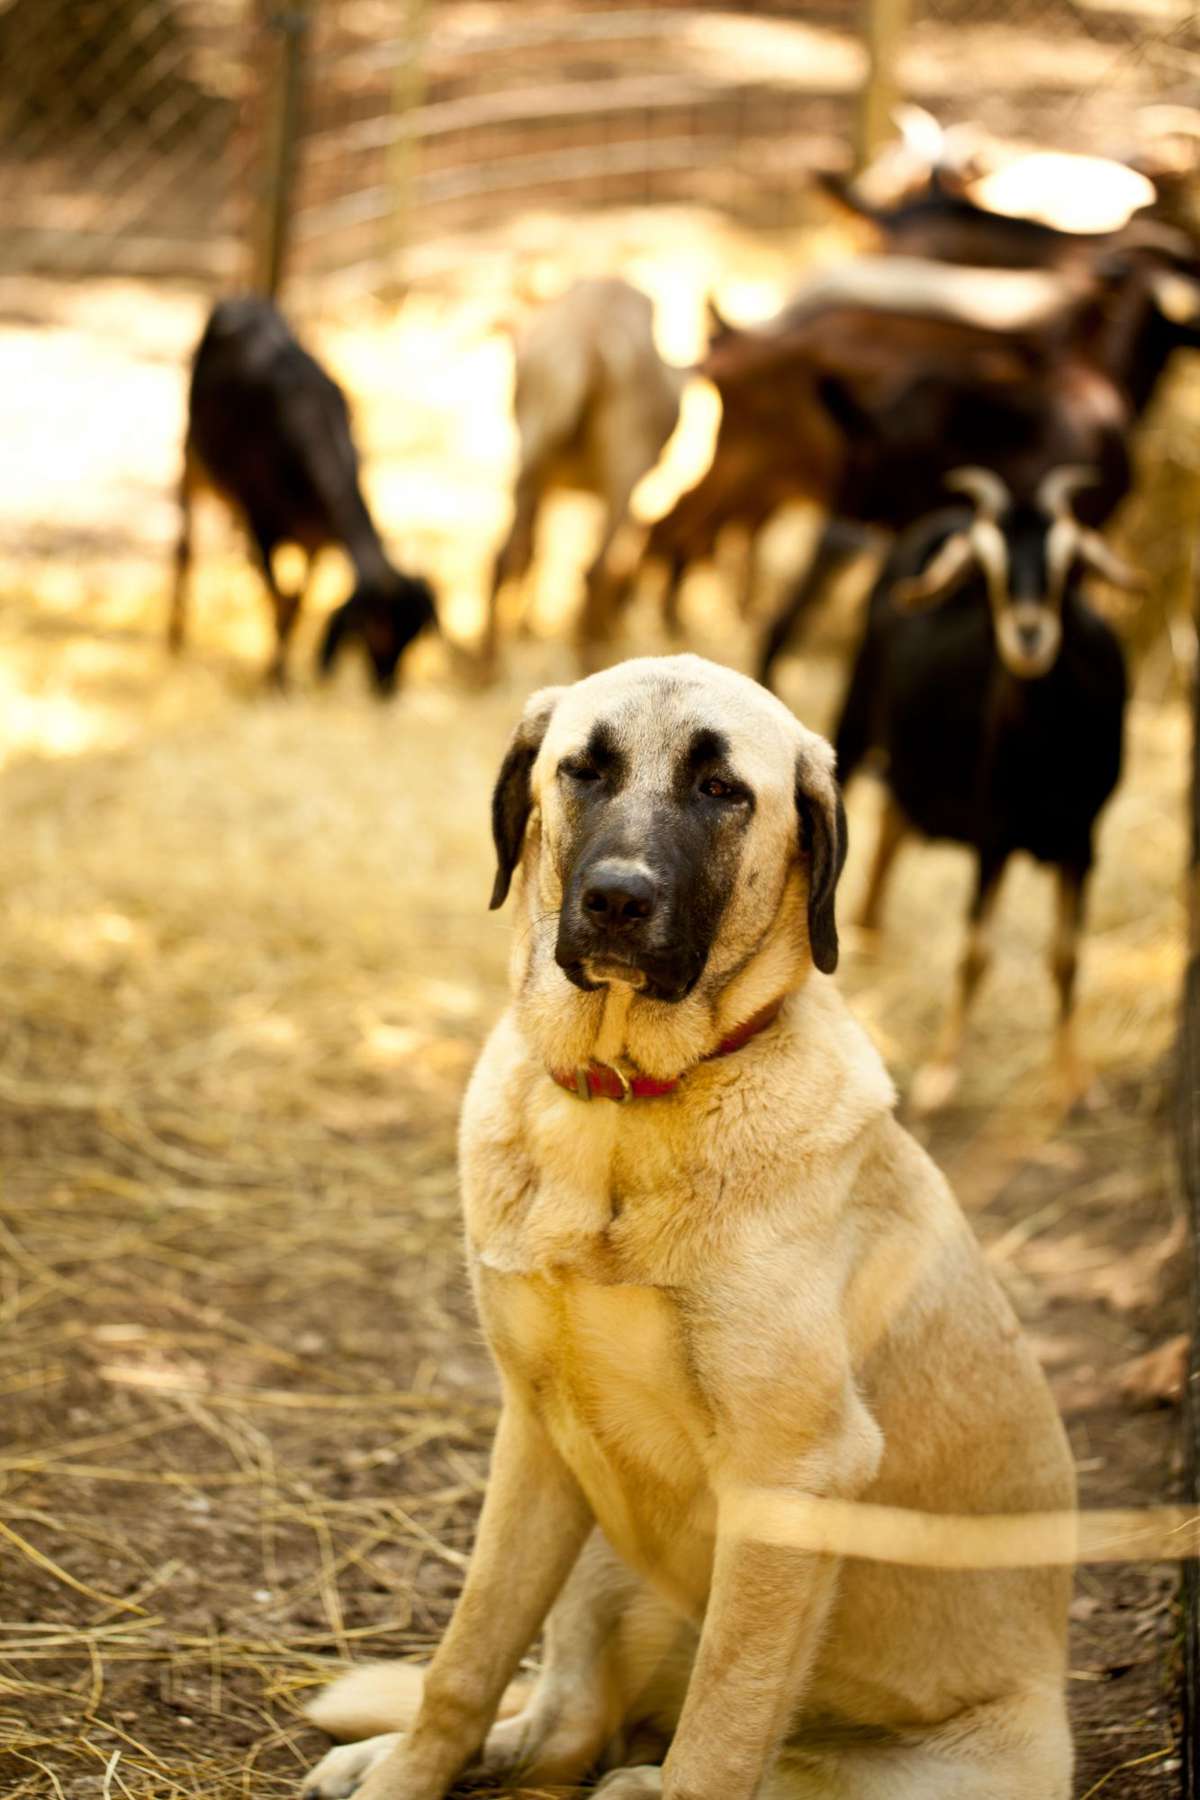 Slate Hill Farm dog with goats